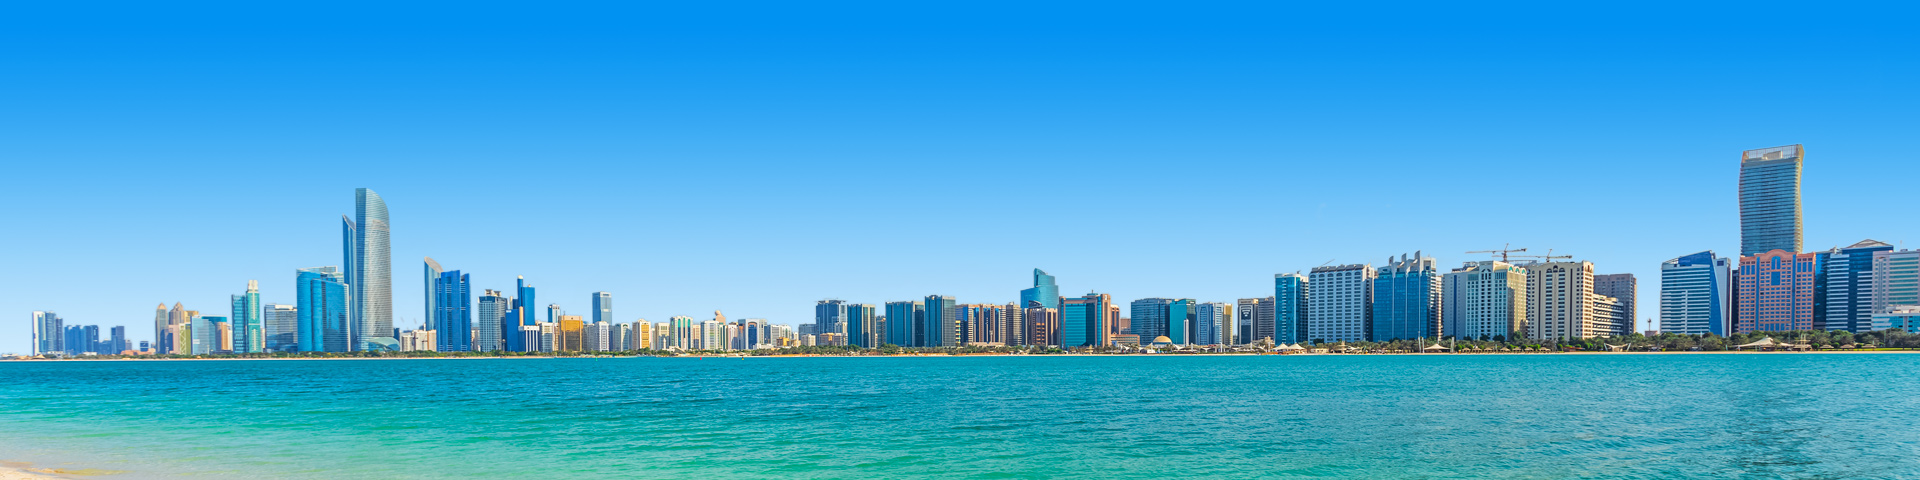 Alle last minutes naar Abu Dhabi bij Prijsvrij Vakanties